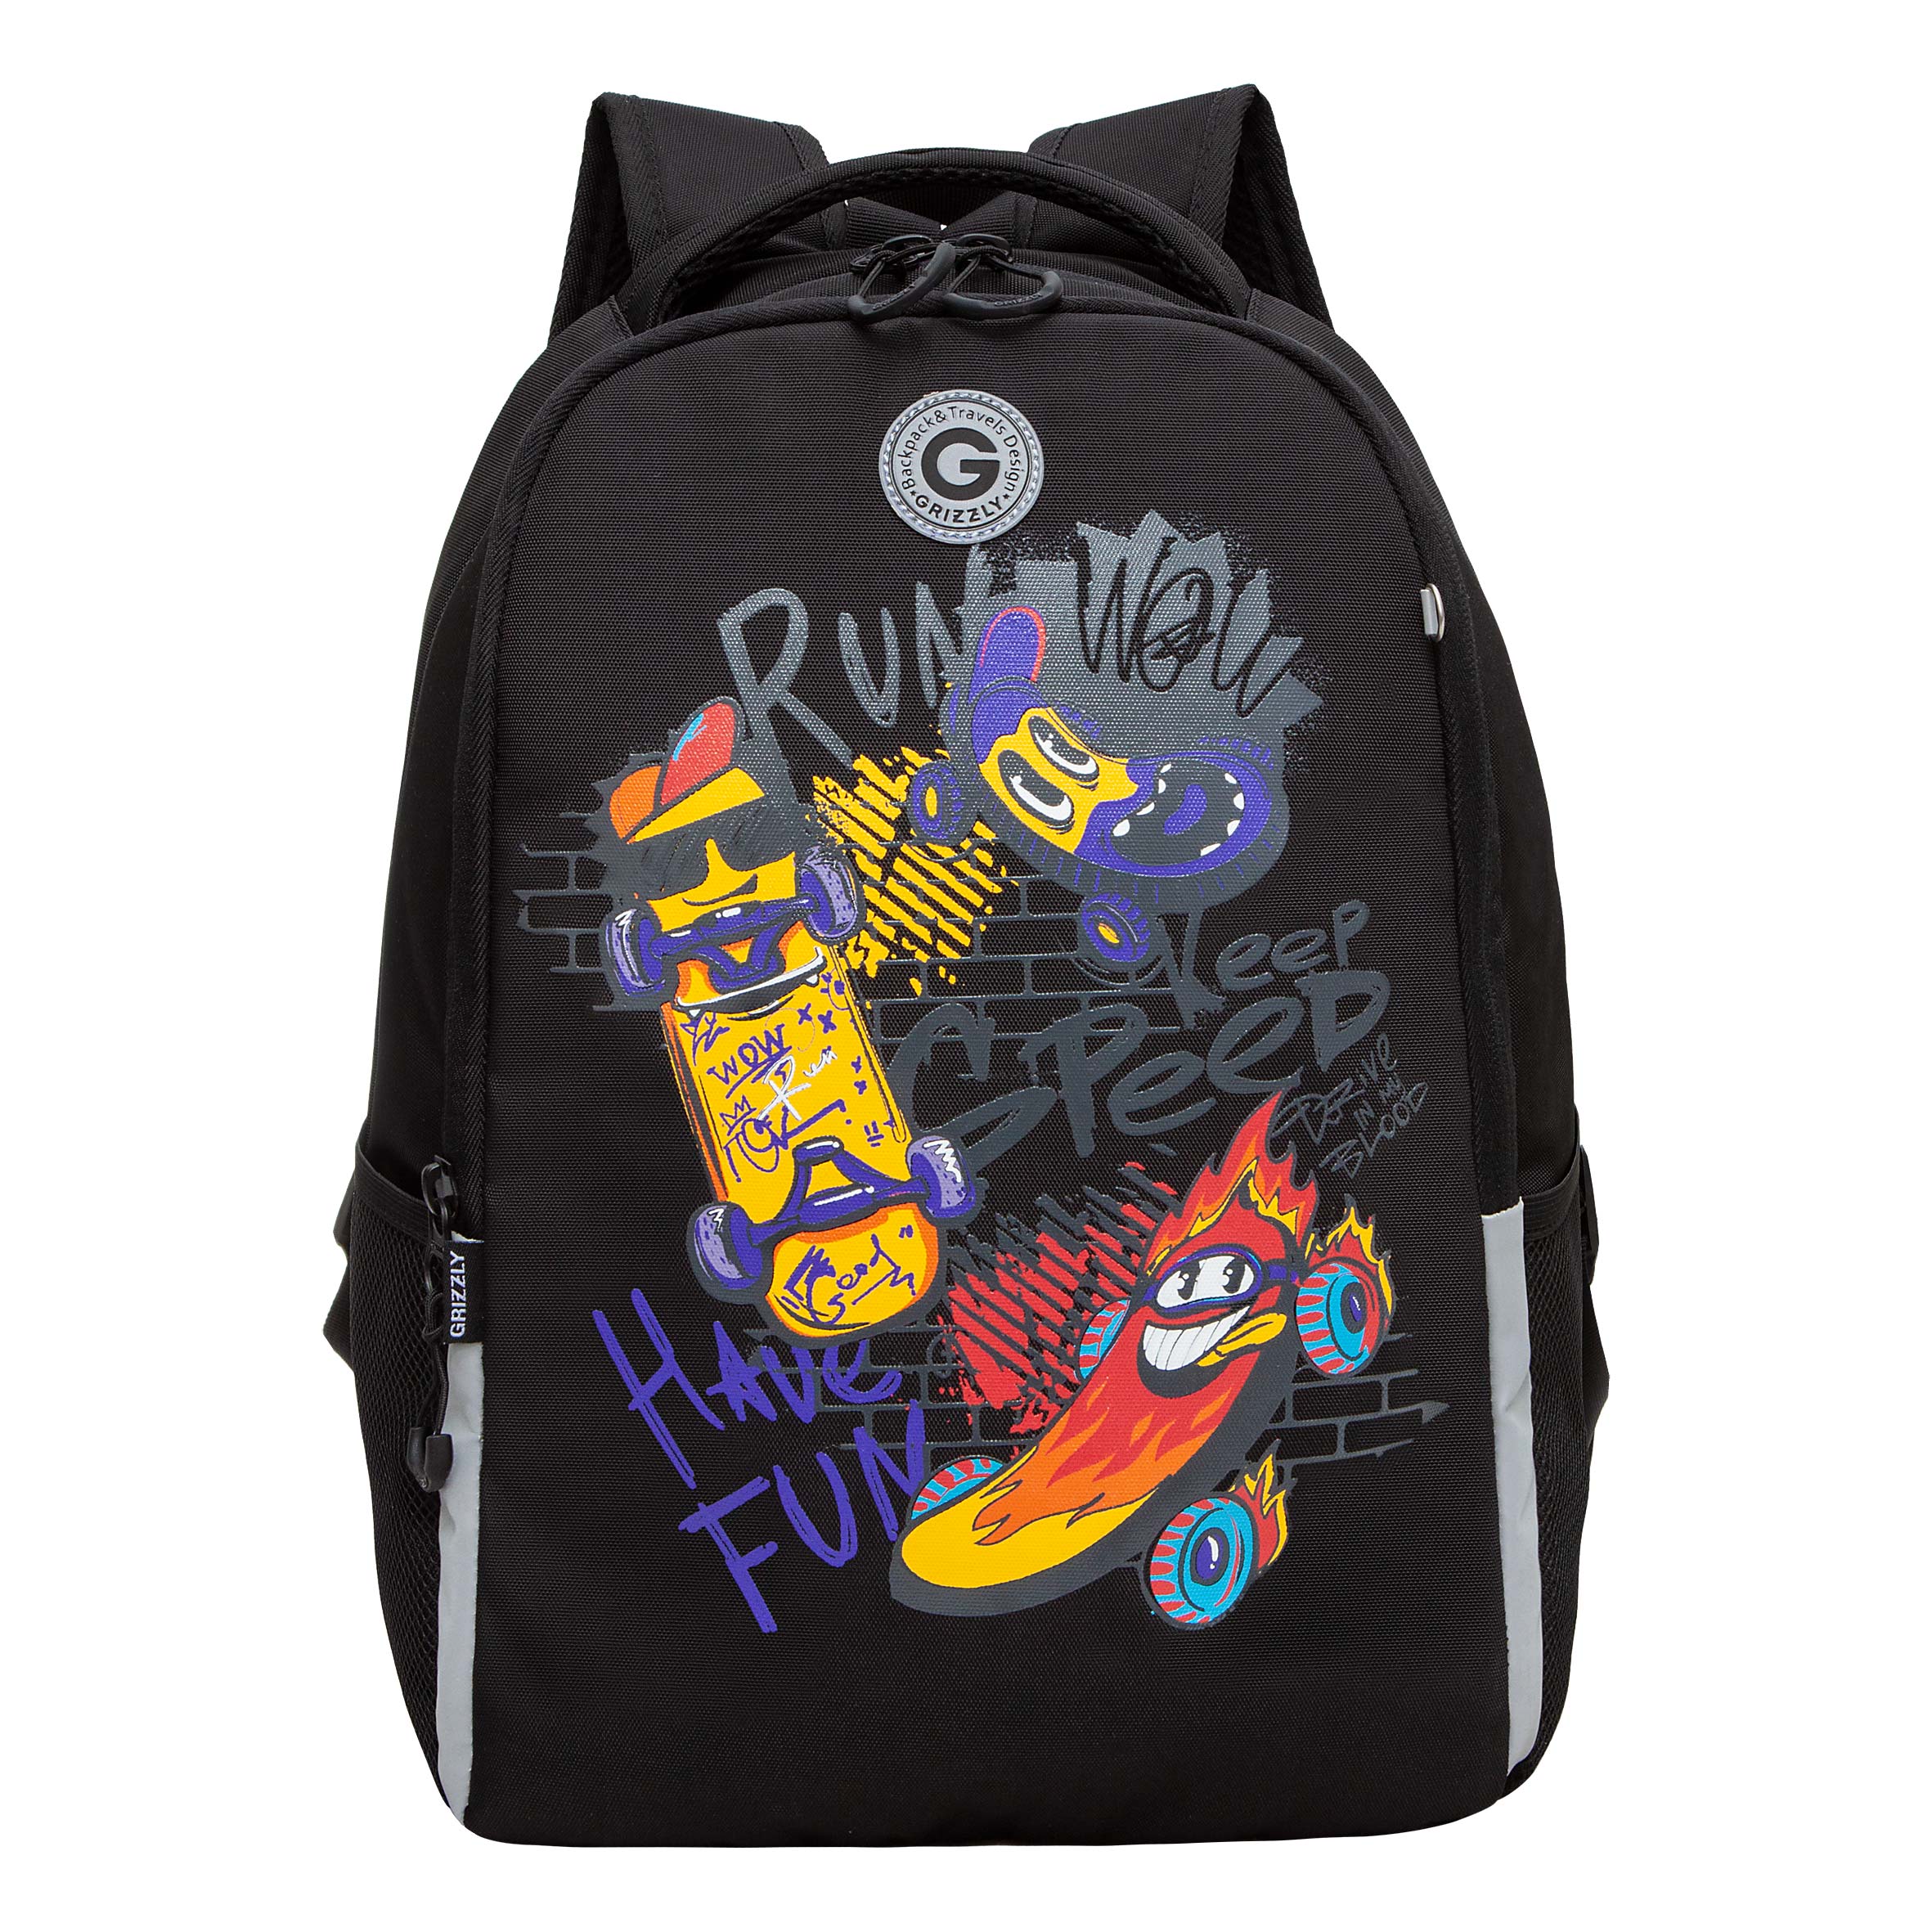 Рюкзак школьный GRIZZLY легкий с жесткой спинкой, 2 отделения, для мальчика RB-451-7/1 рюкзак школьный 42 см дино два отделения